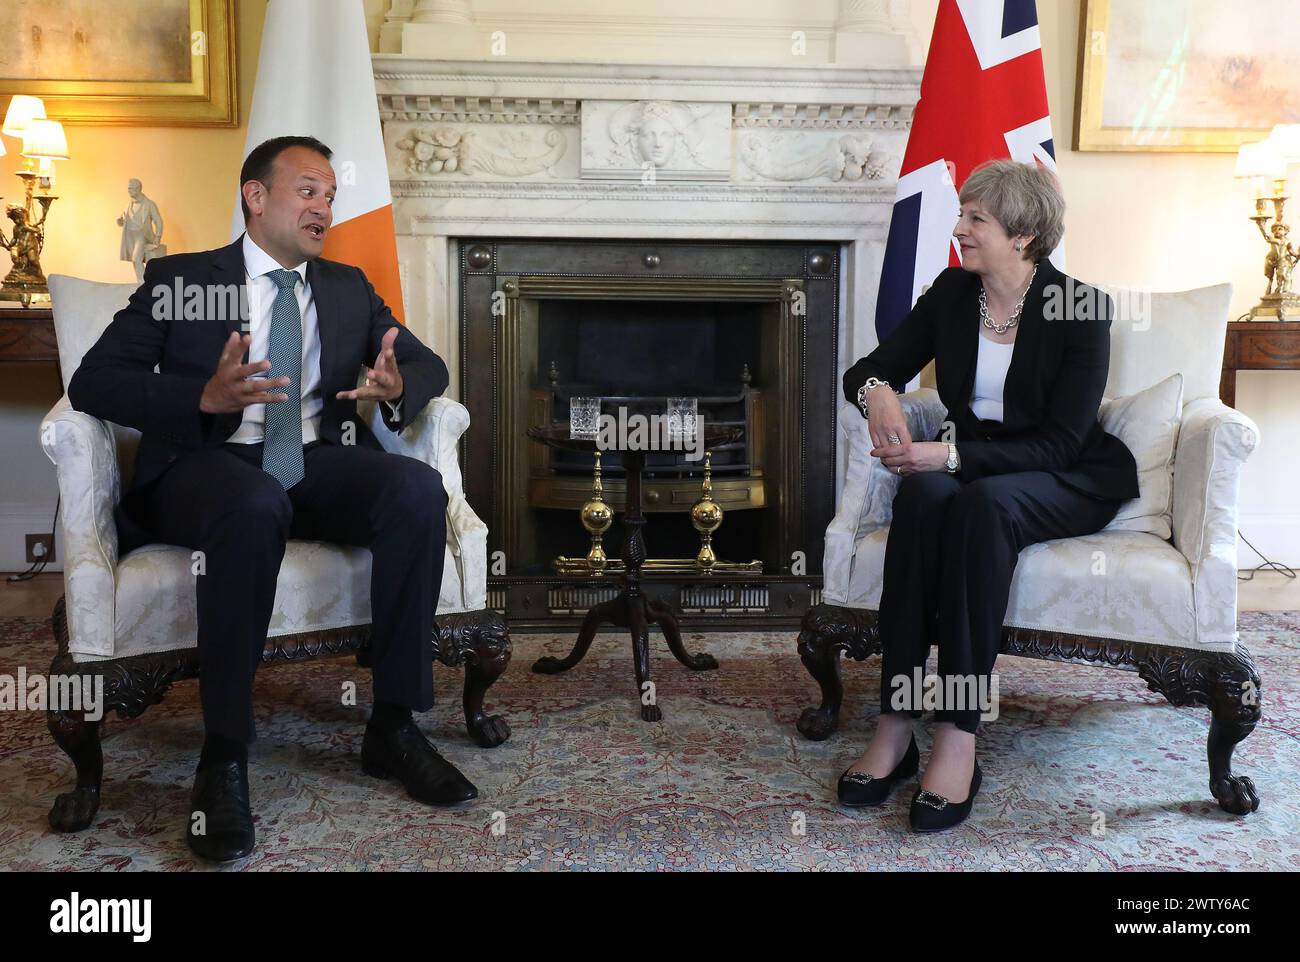 Dateifoto vom 19./6/2017 von Premierministerin Theresa May trifft den neuen Taoiseach Leo Varadkar in der Downing Street 10, London. Varadkar hat angekündigt, dass er als Taoiseach und als Führer seiner Partei, Fine Gael, zurücktreten wird. Ausgabedatum: Mittwoch, 20. März 2024. Stockfoto